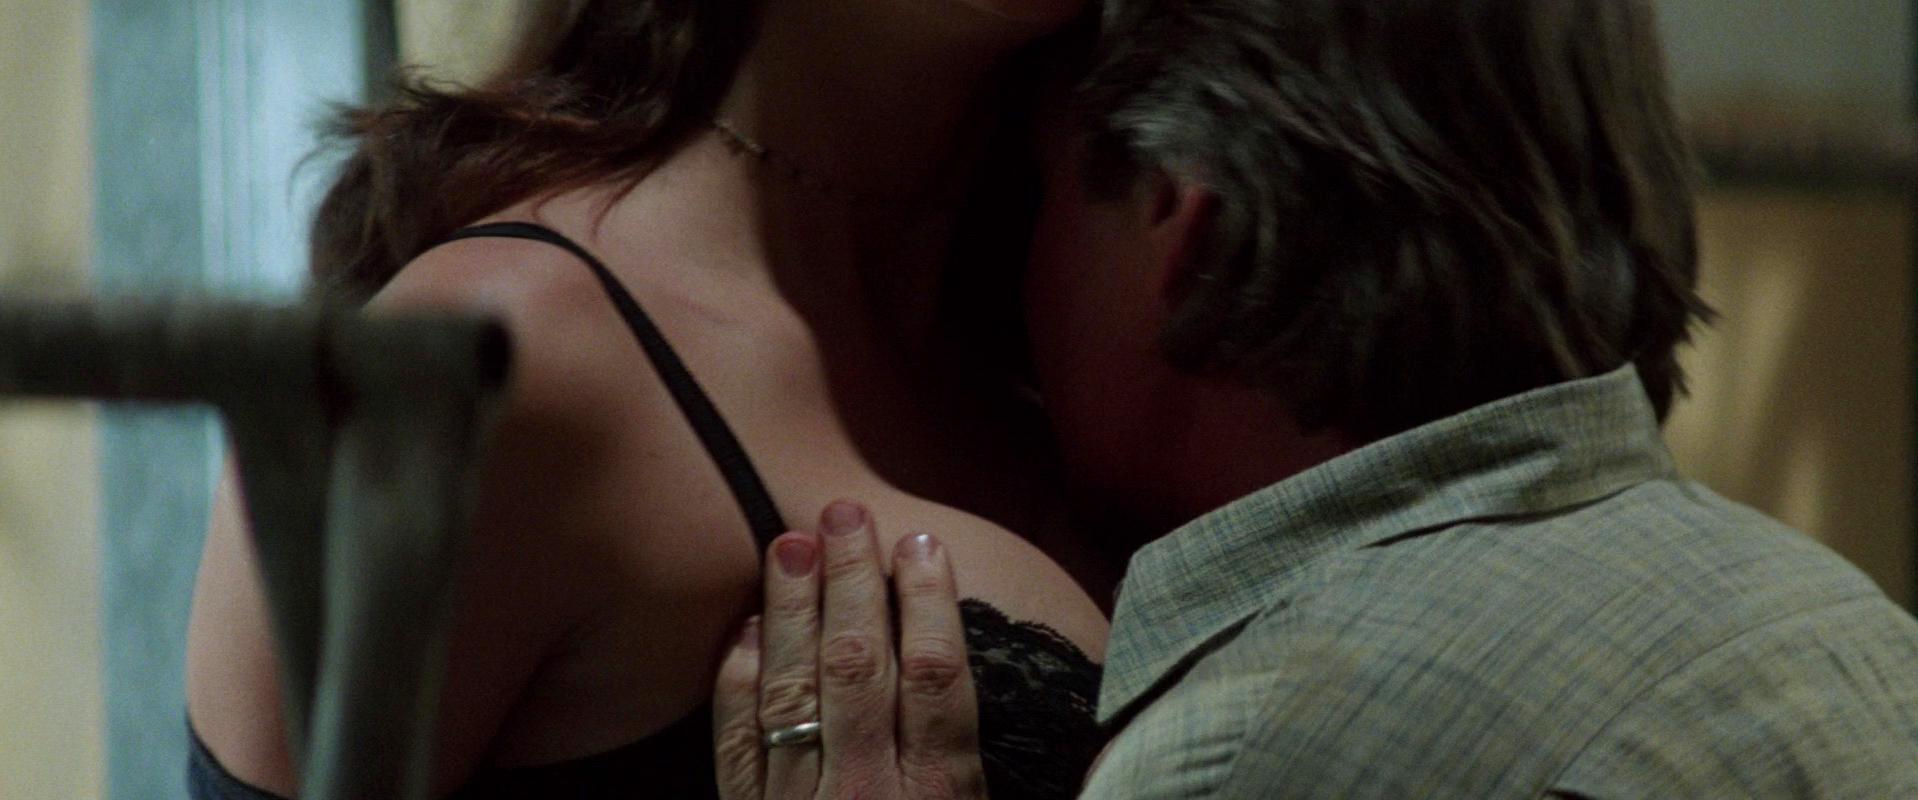 Demi moore disclosure movie sex scene clip